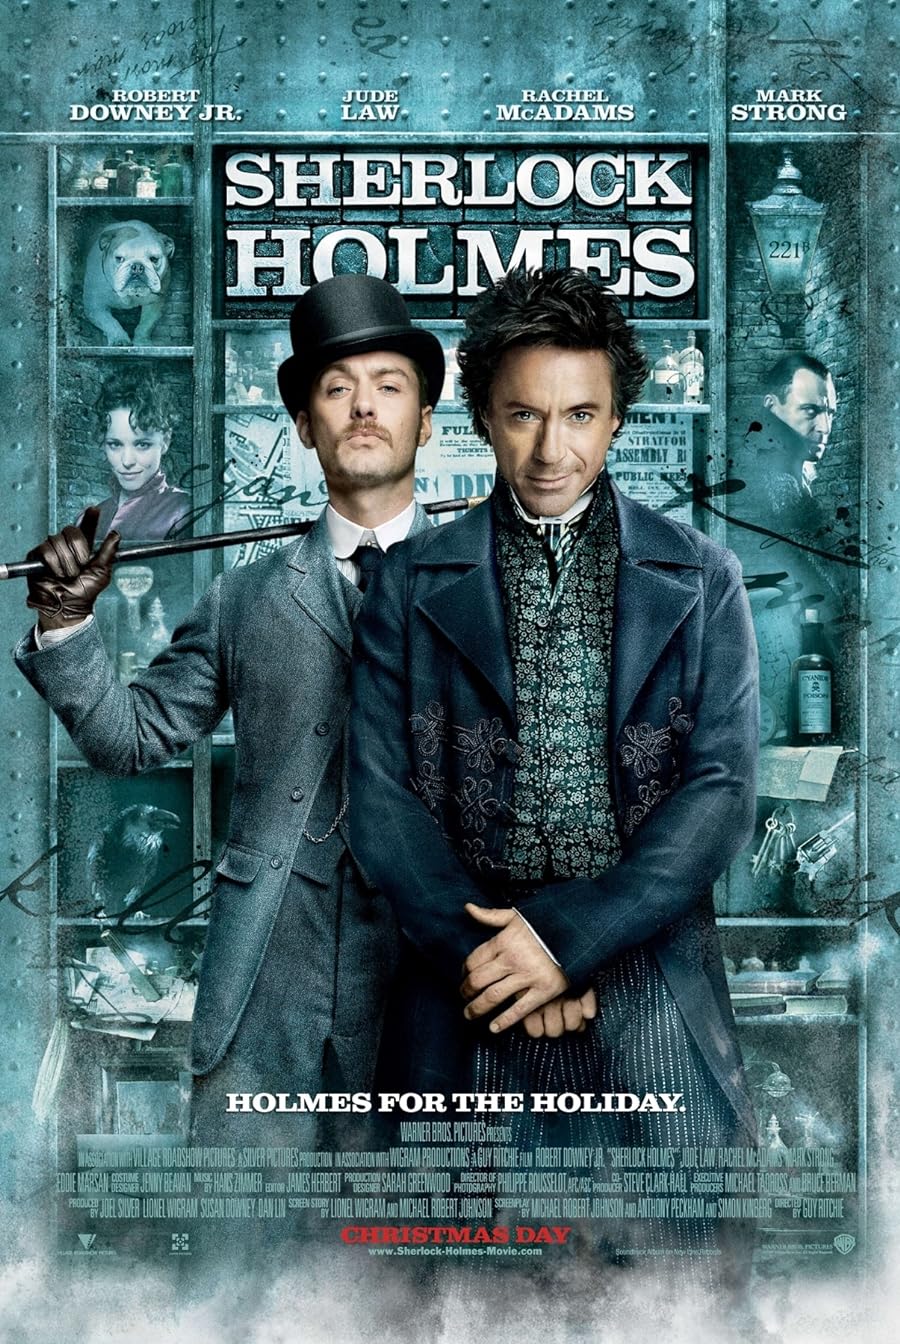 دانلود فیلم Sherlock Holmes 2009